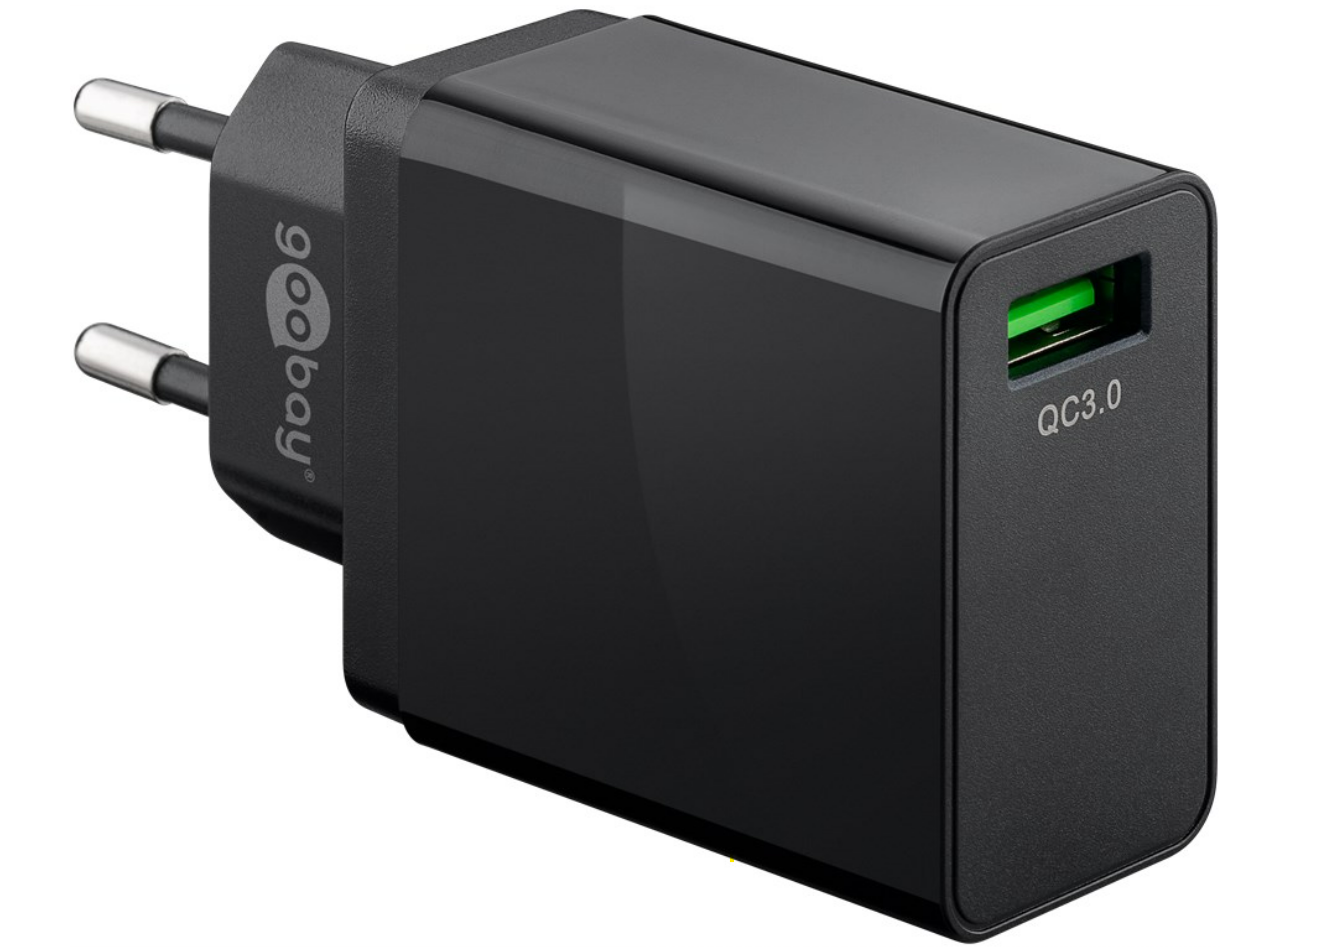 USB-Schnellladegerät QC 3.0 (18 W) schwarz